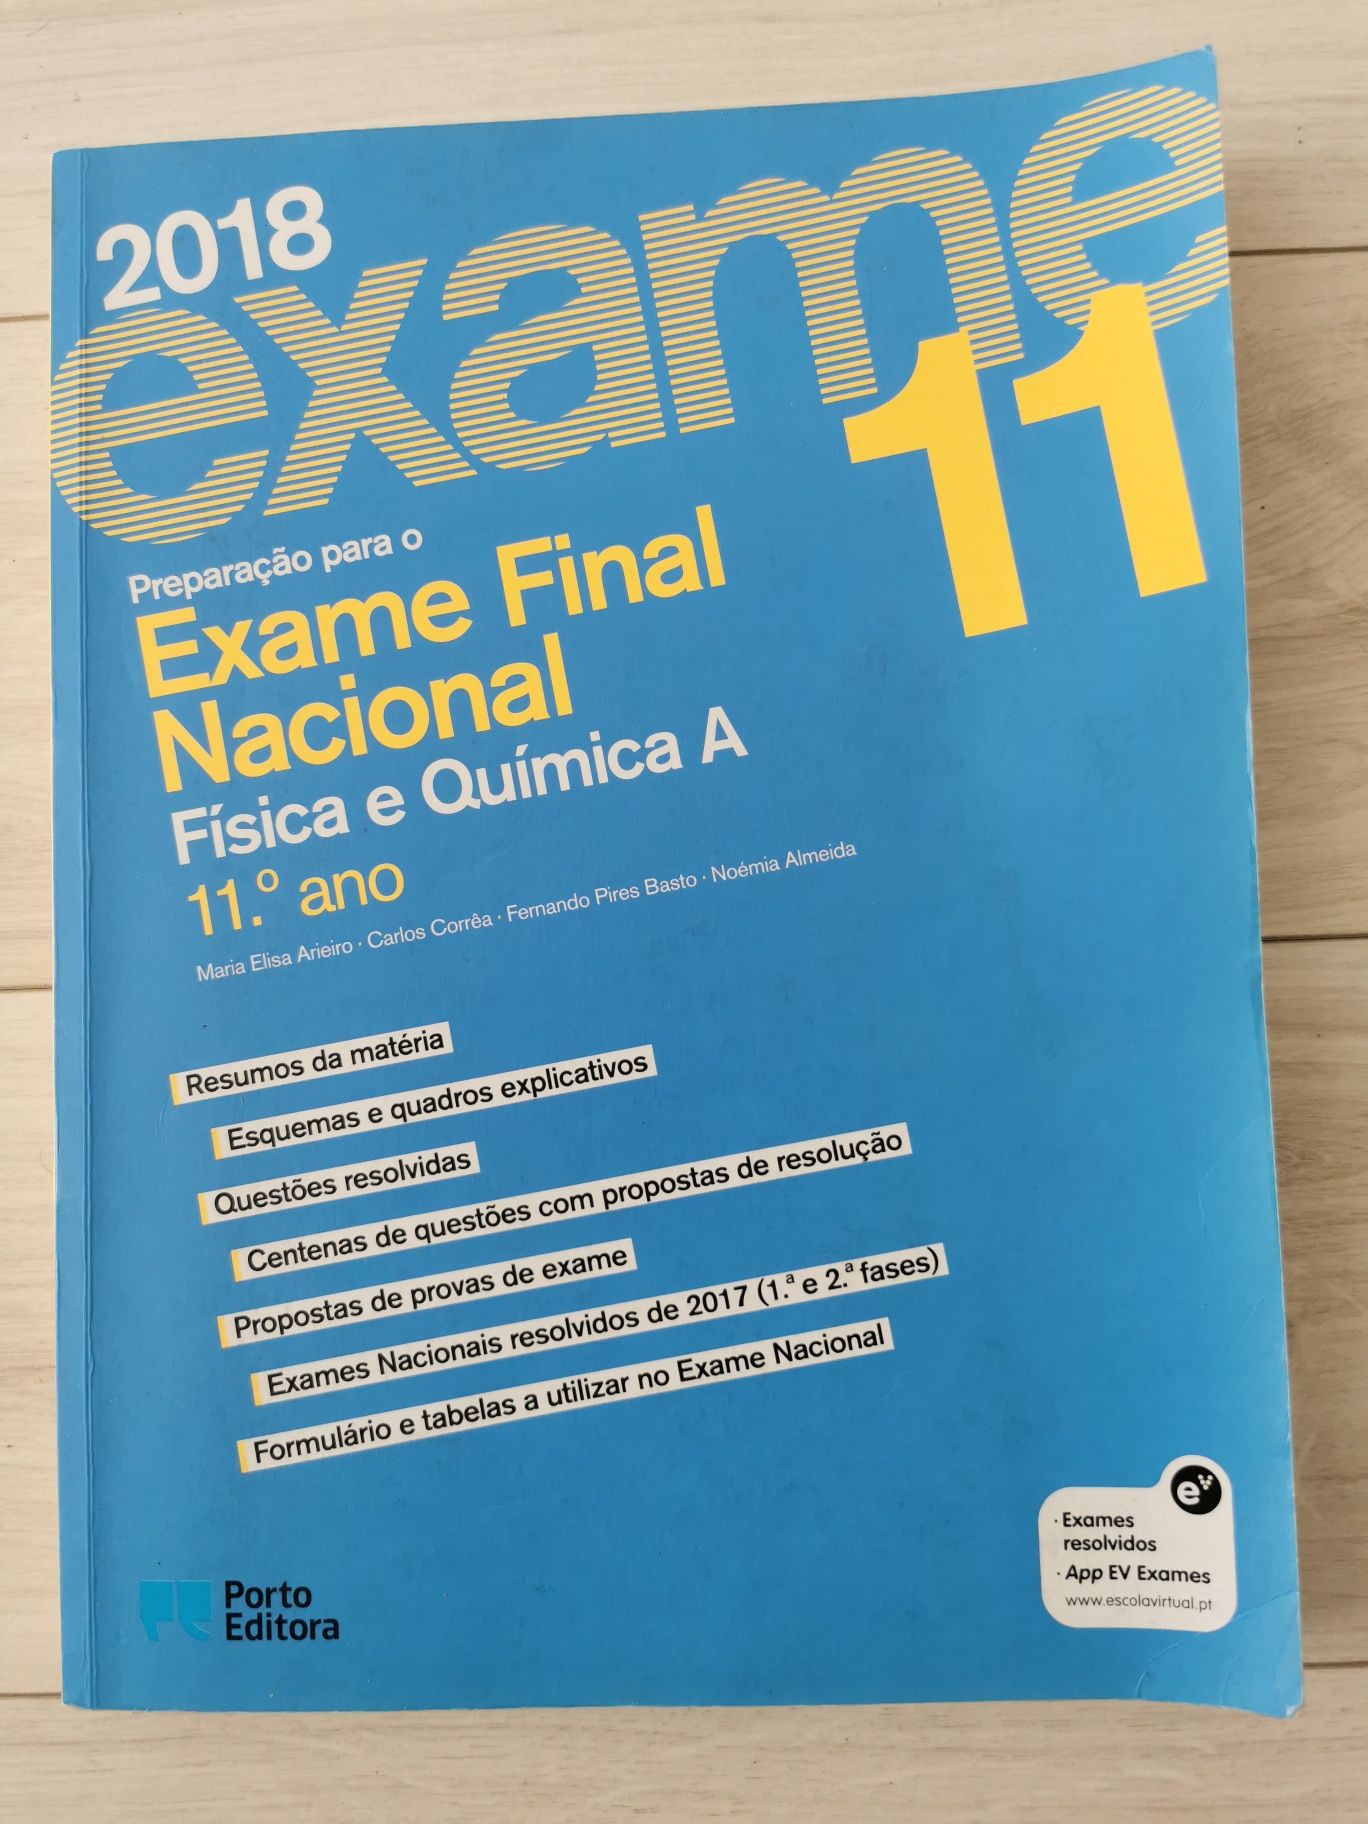 Física e Química A (11°Ano) Exame Final Nacional